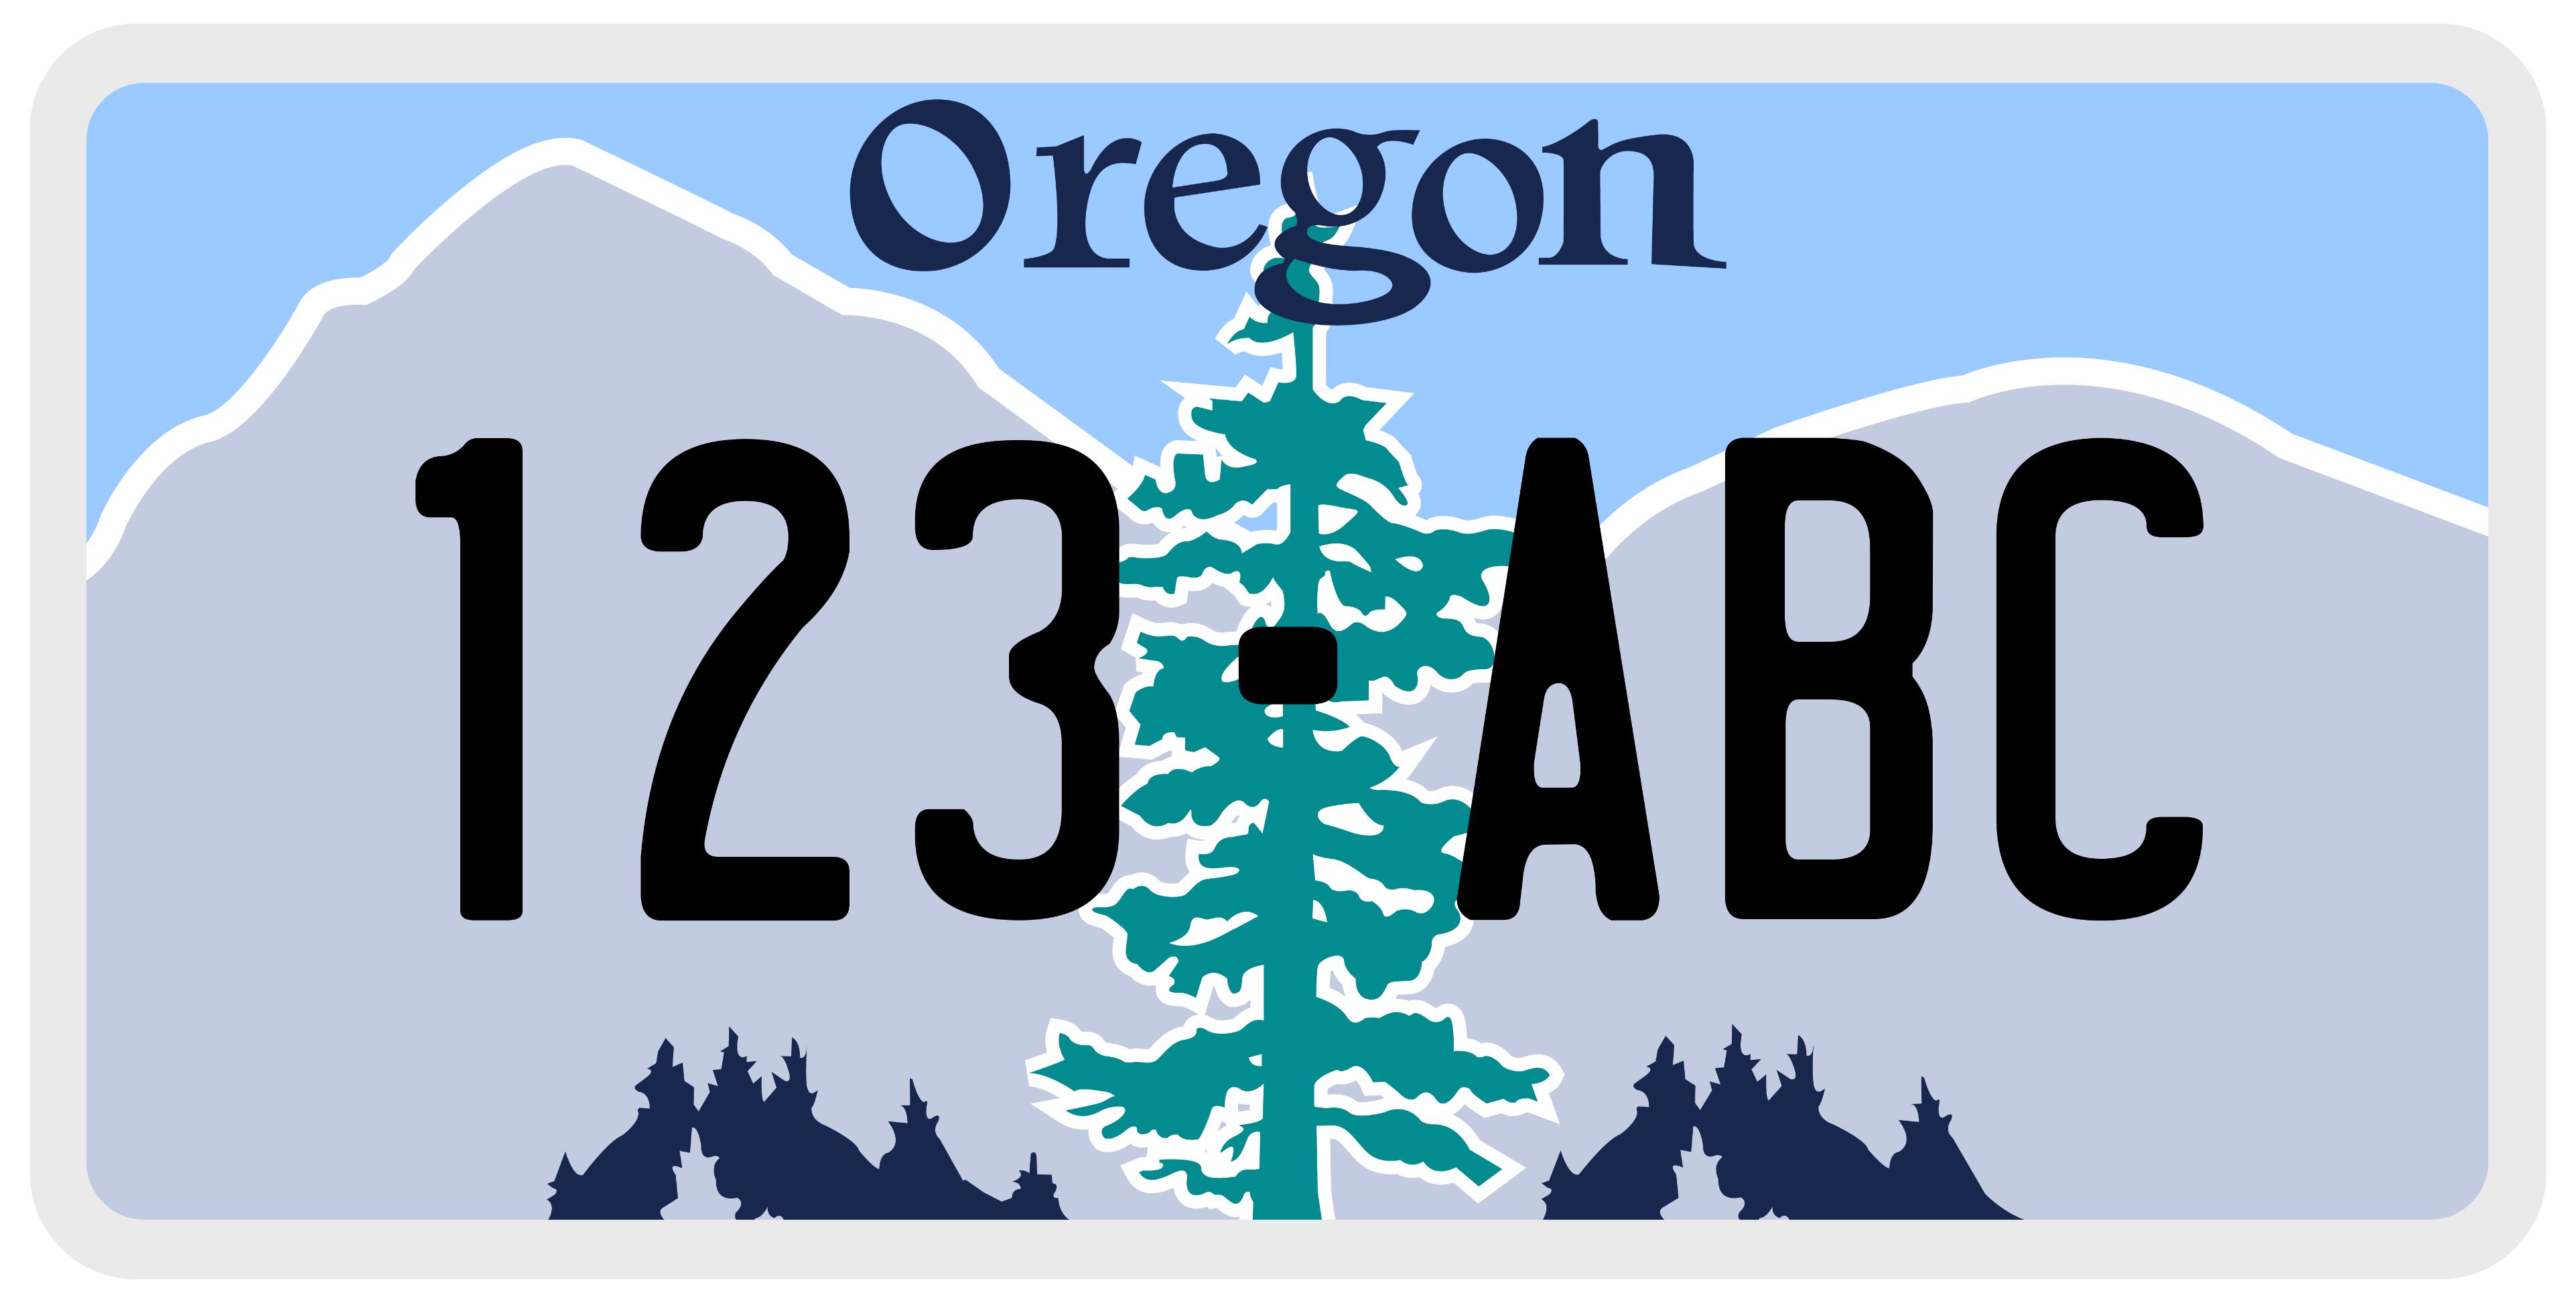 Sample Oregon License Plate Image